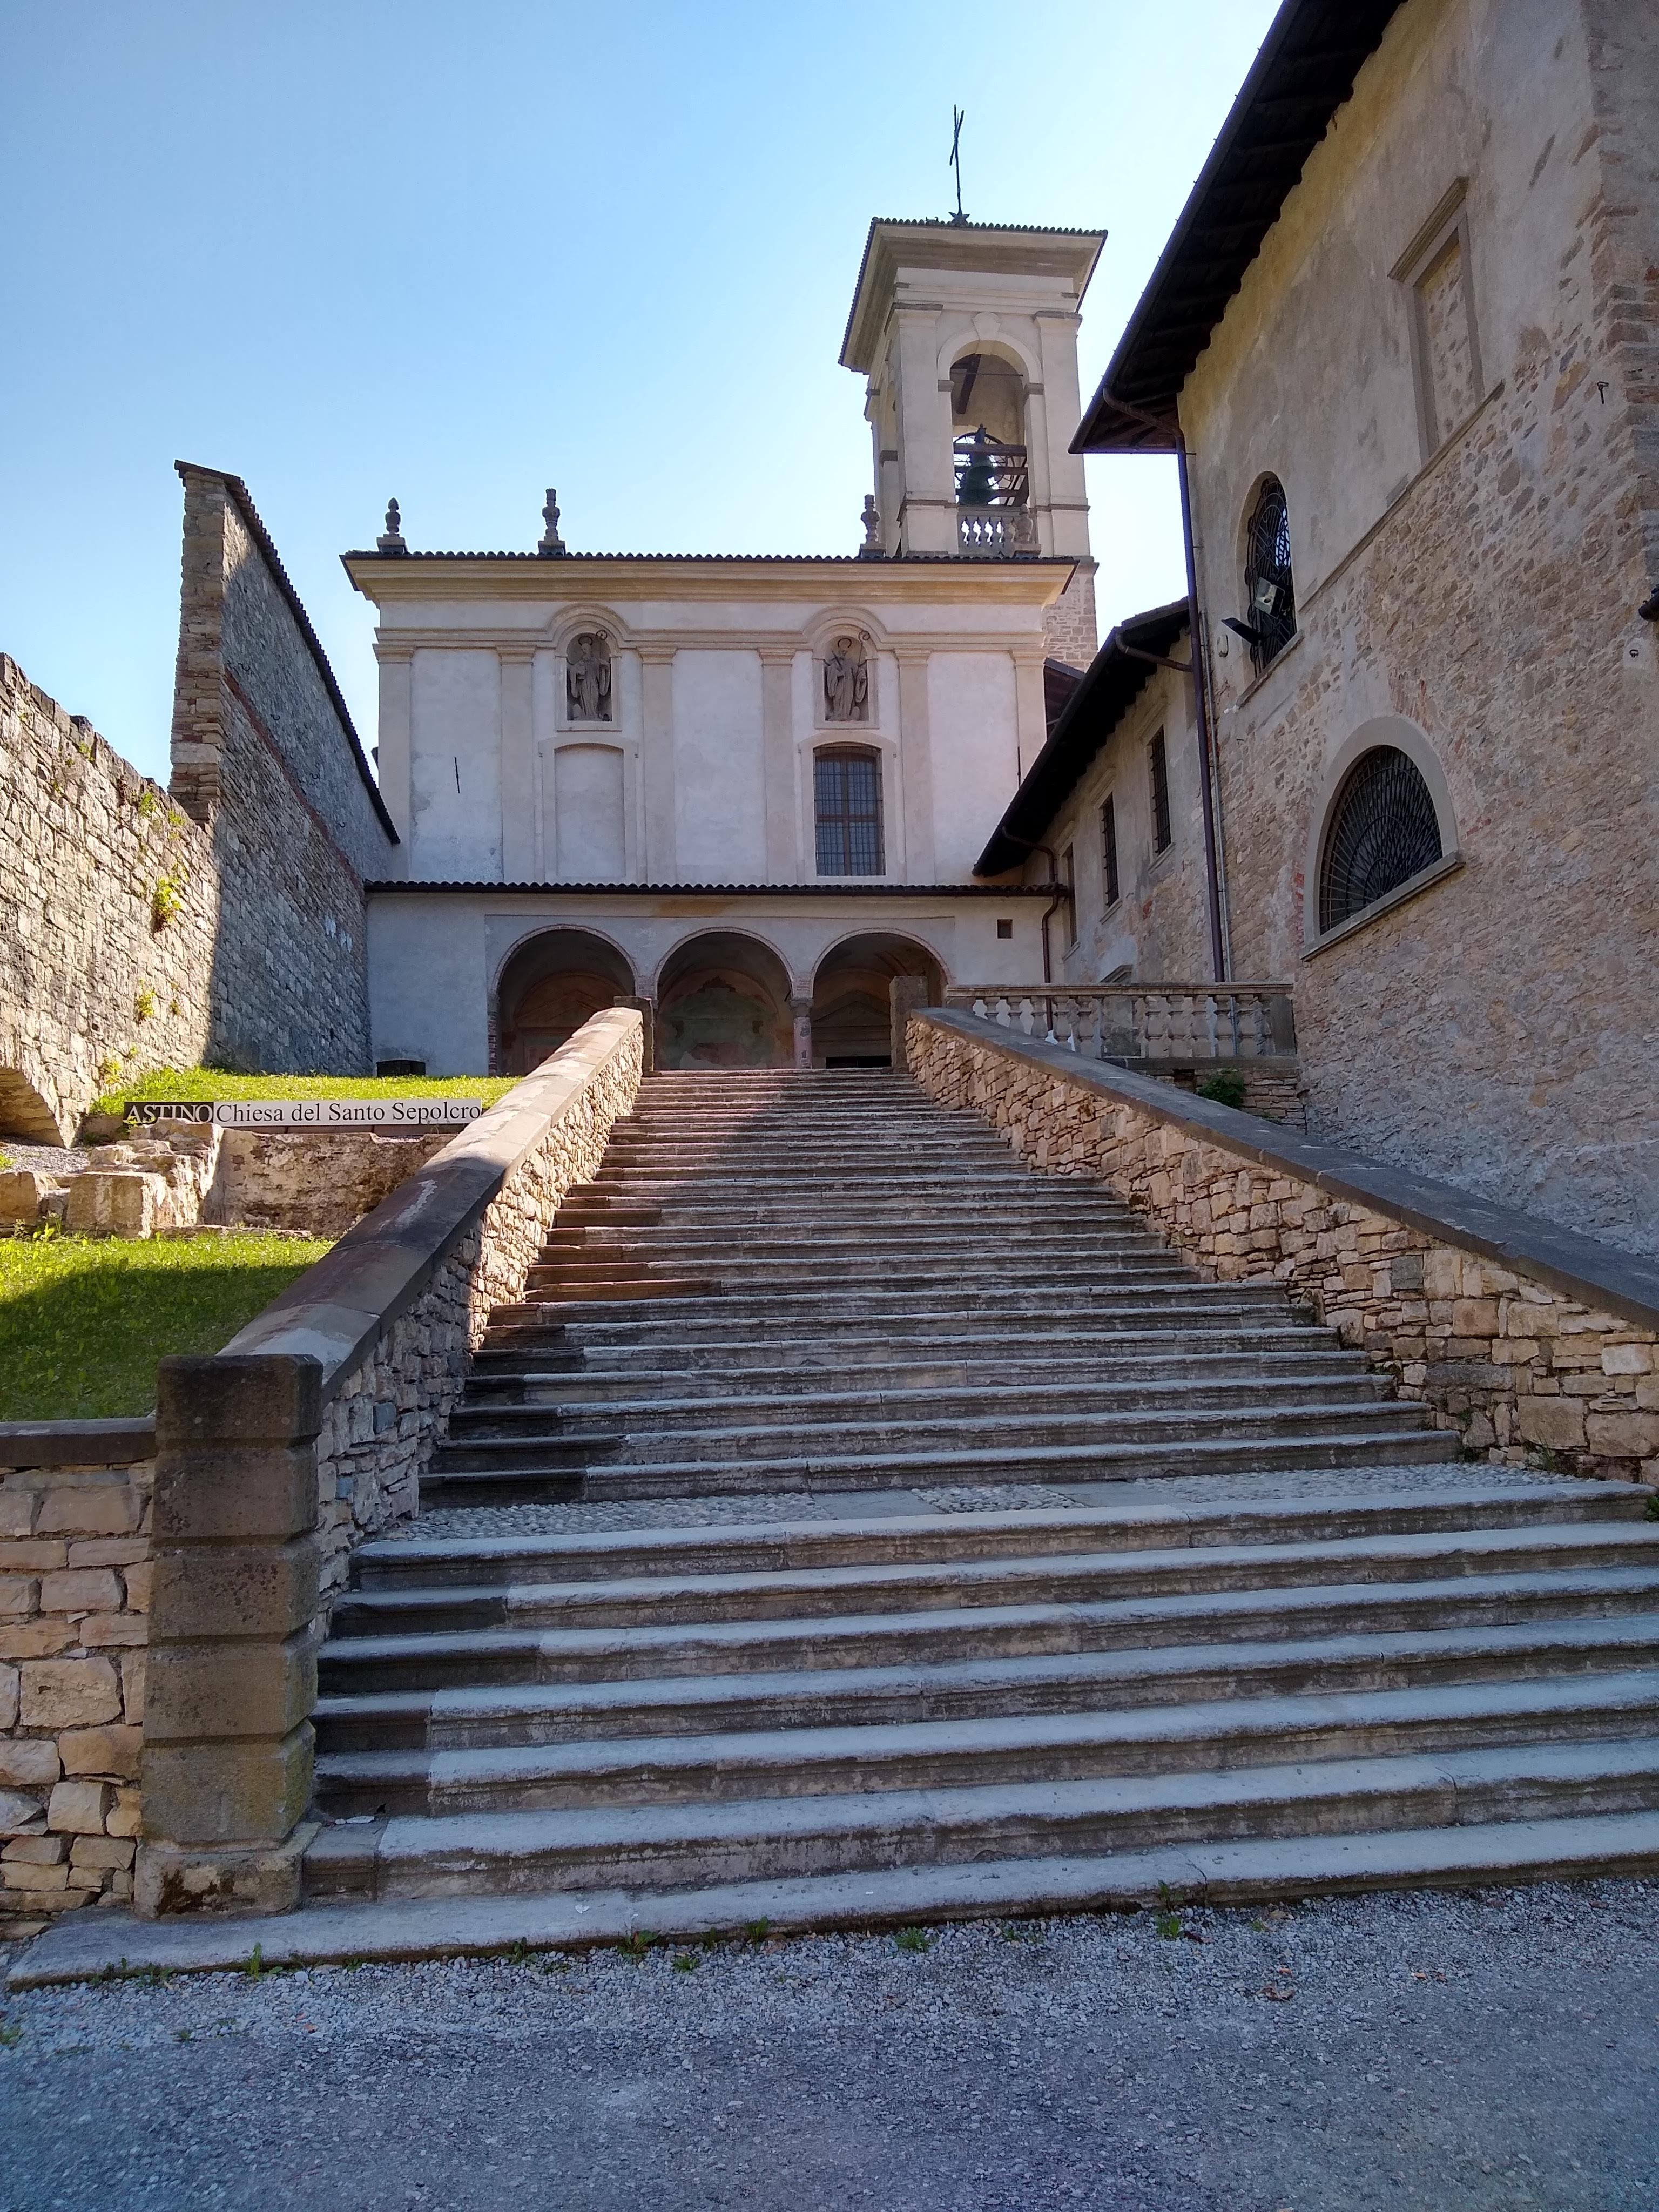 Bergamo är känt för sin mur och alla sin trappor